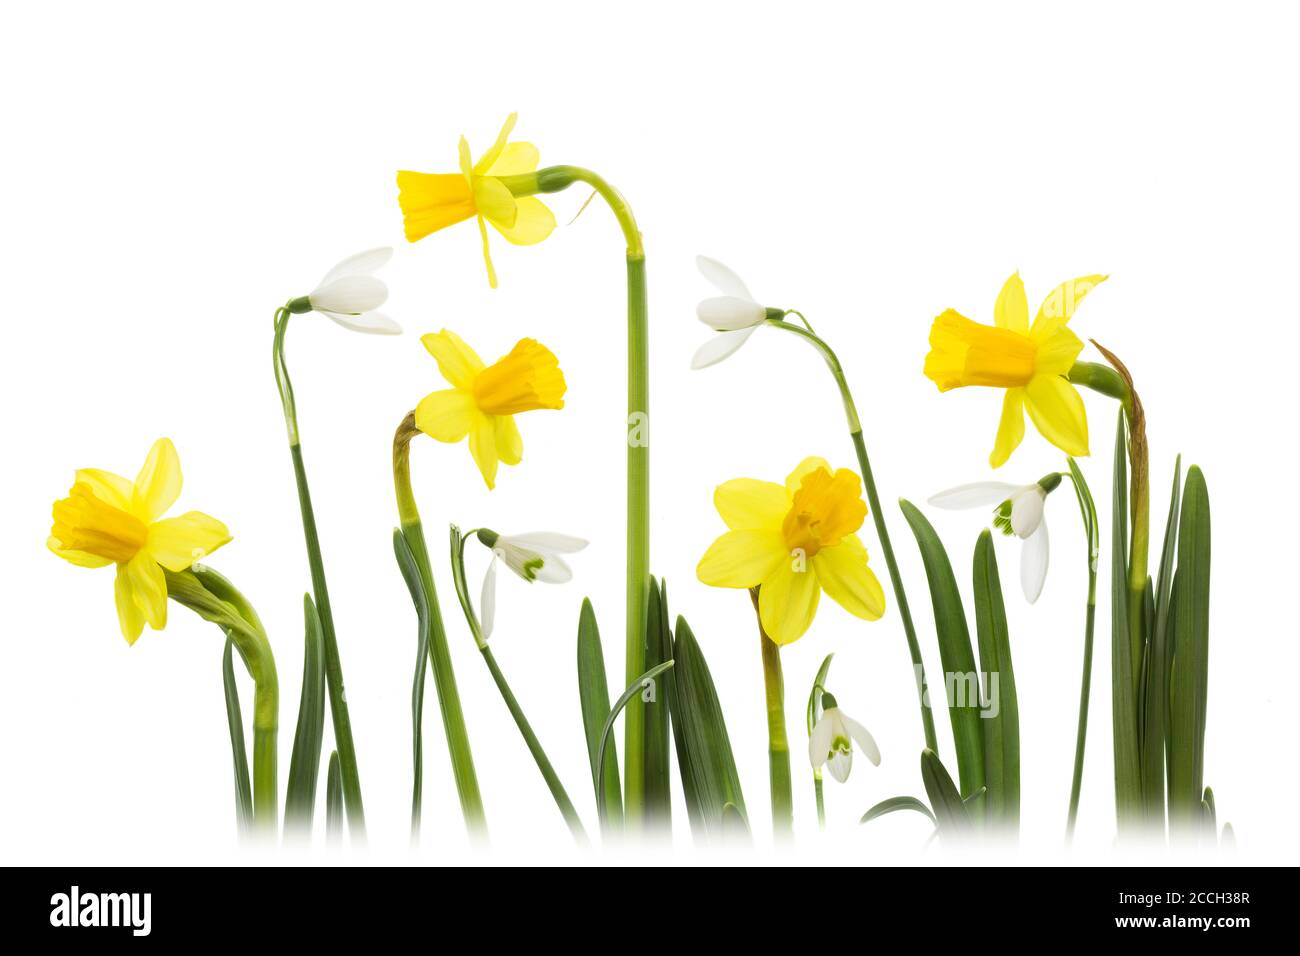 Un collage de fleurs blanches de Snowdrops (Galanthus) et de jonquilles a été isolé sur fond blanc Banque D'Images